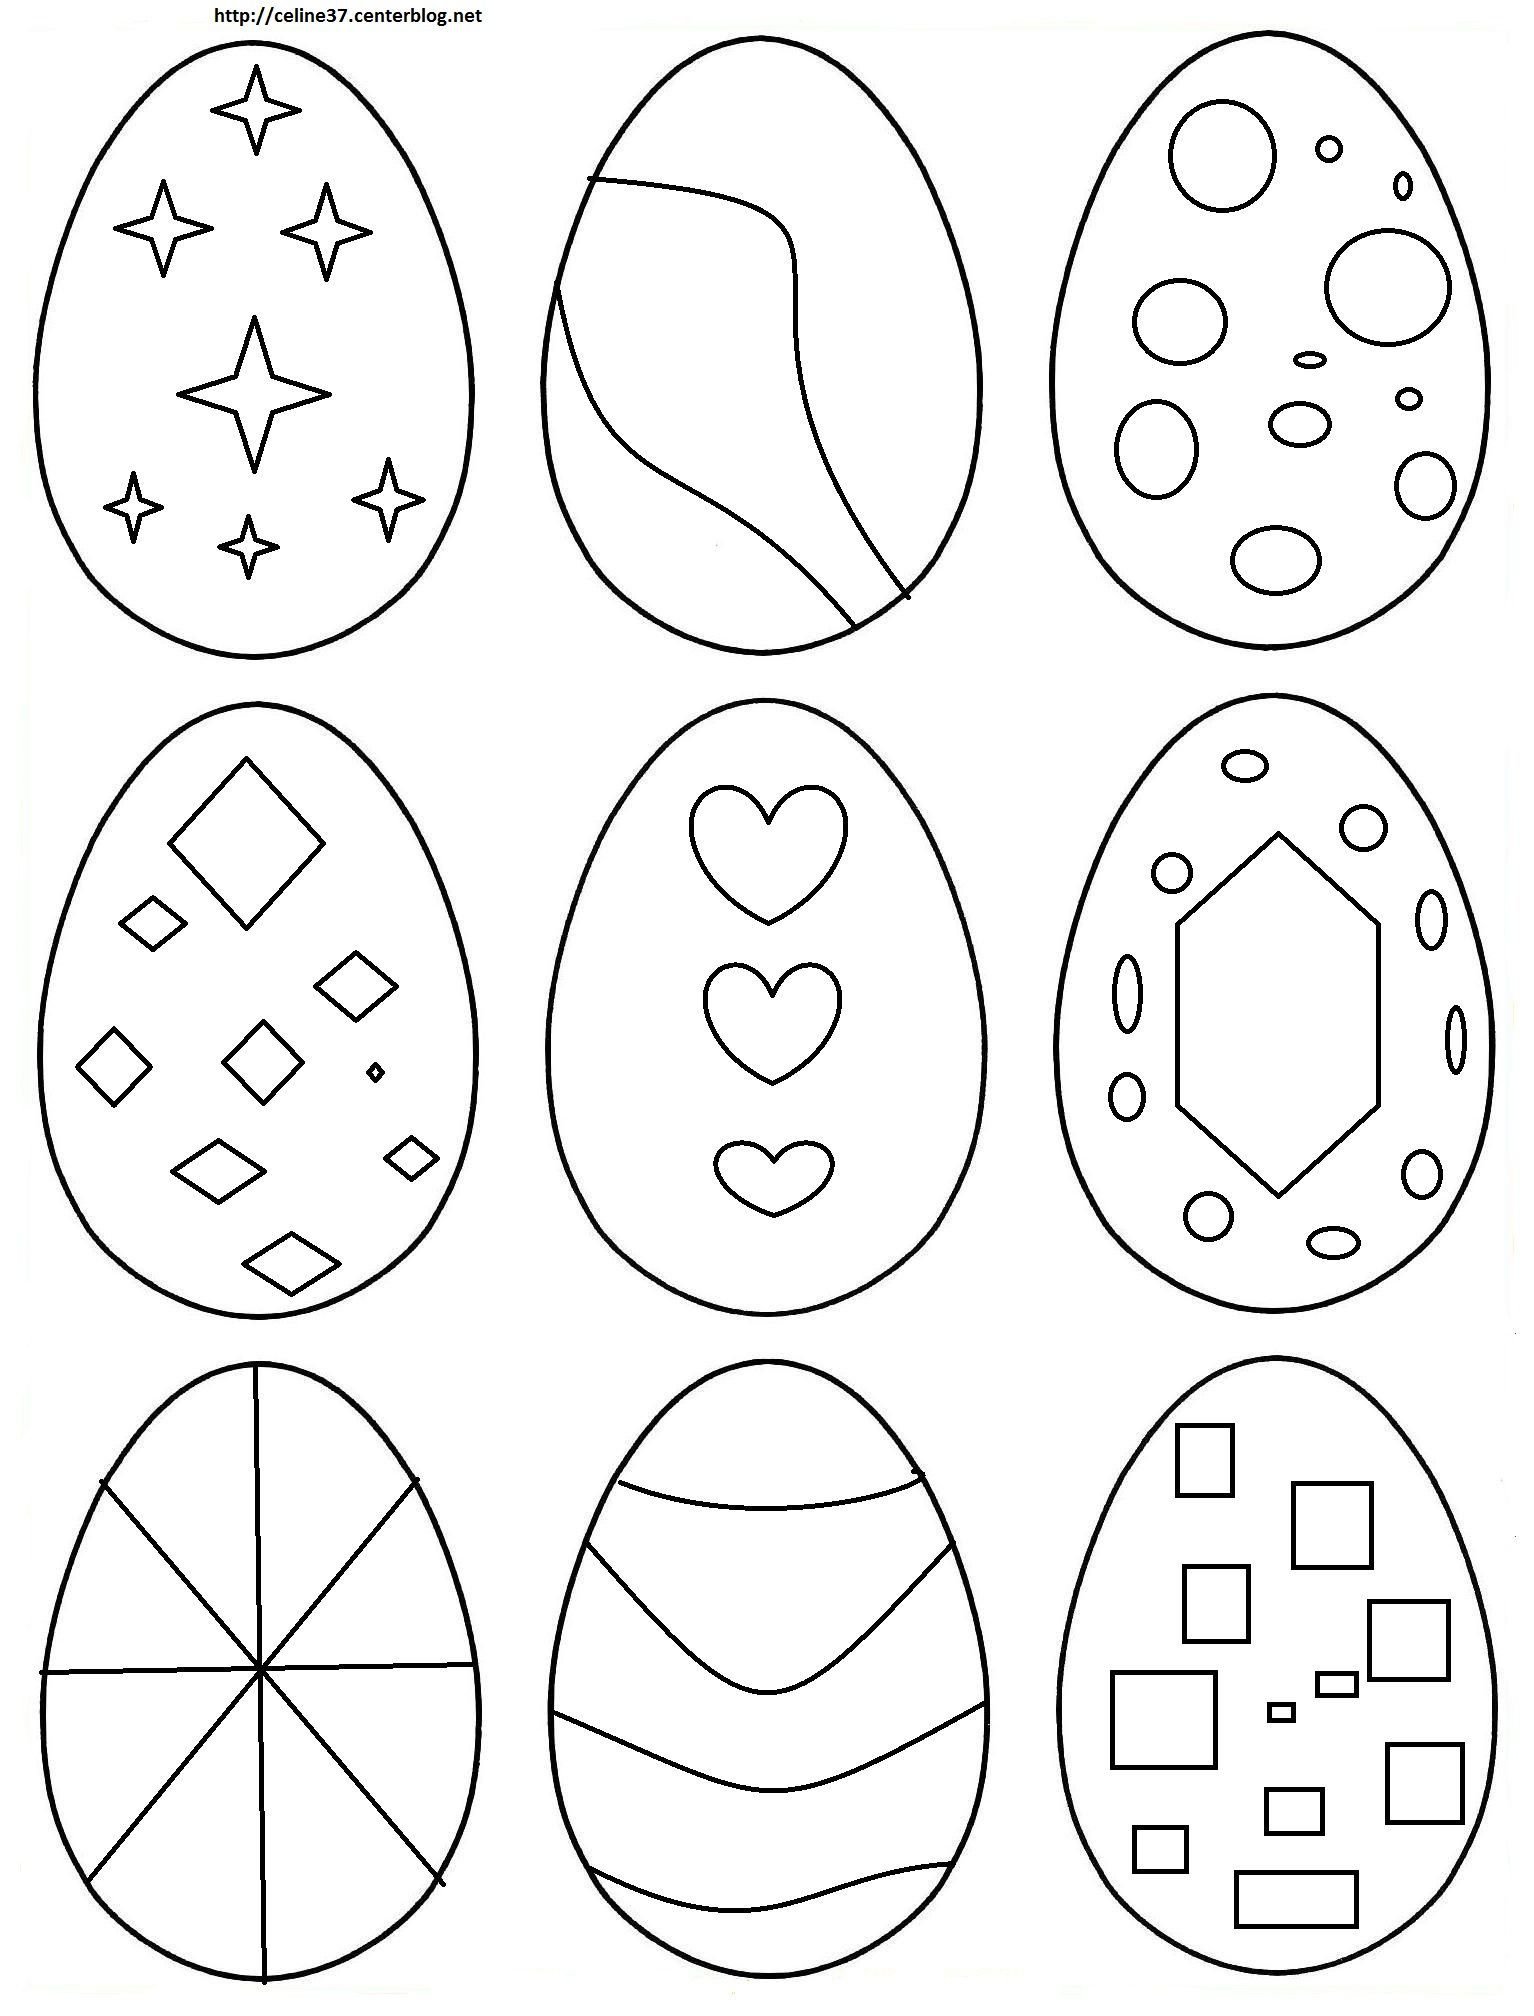 Заготовка пасхального яйца. Пасхальное яйцо раскраска для детей. Трафарет яйцо пасхальное. Раскраски пасочных яиц. Трафареты пасхальных яиц для раскрашивания.